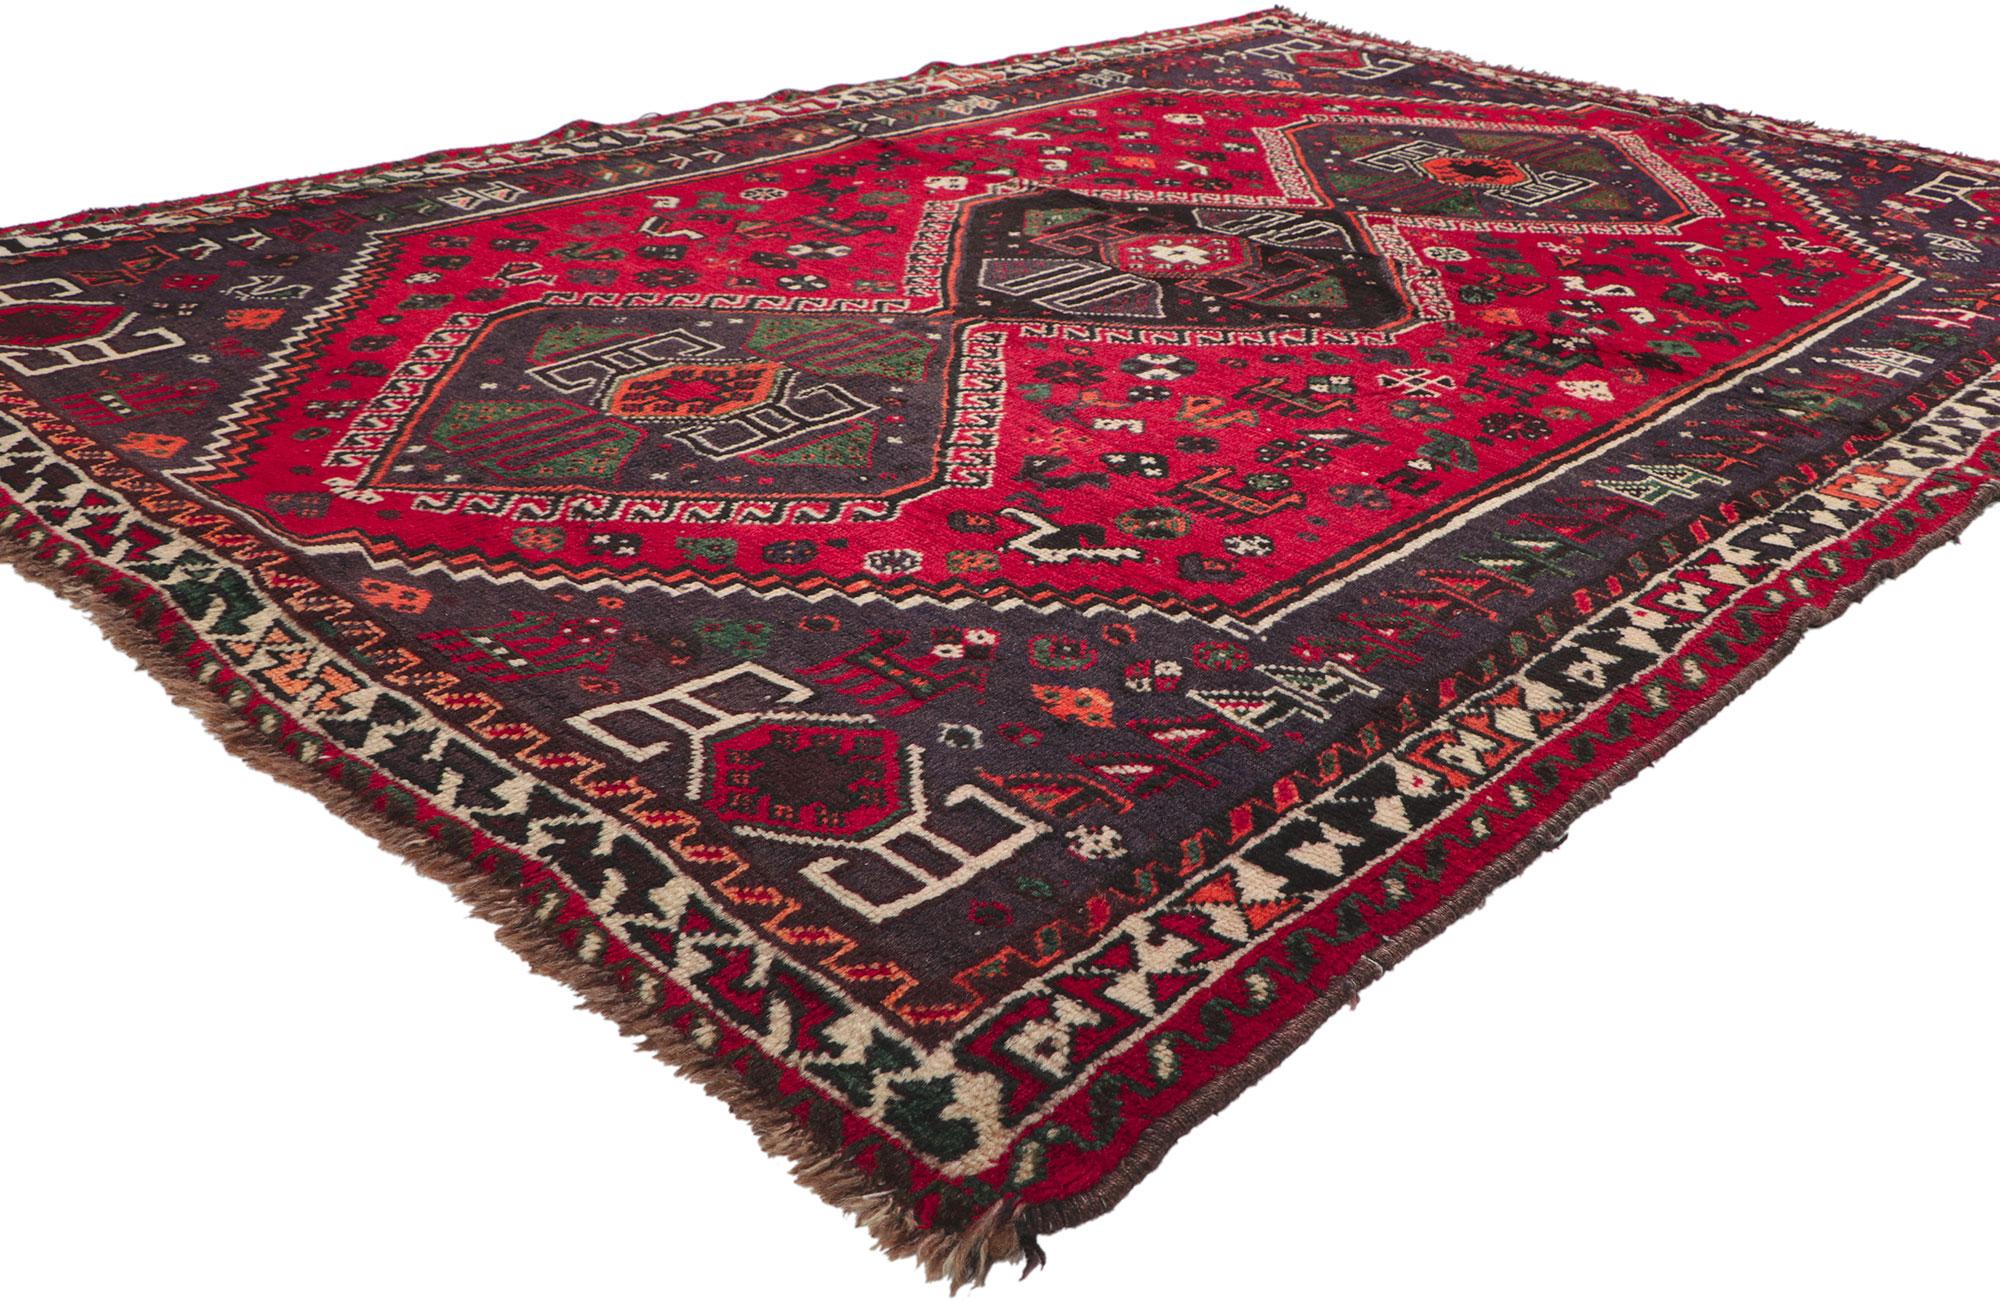 74735 Vintage Persian Shiraz Tribal Rug, 05'08 X 08'01. 
Nomadischer Charme trifft auf südwestlichen Stil in diesem handgeknüpften persischen Shiraz-Teppich aus alter Wolle. Das überzeugende Stammesmuster und die leuchtenden Erdtöne, die in dieses